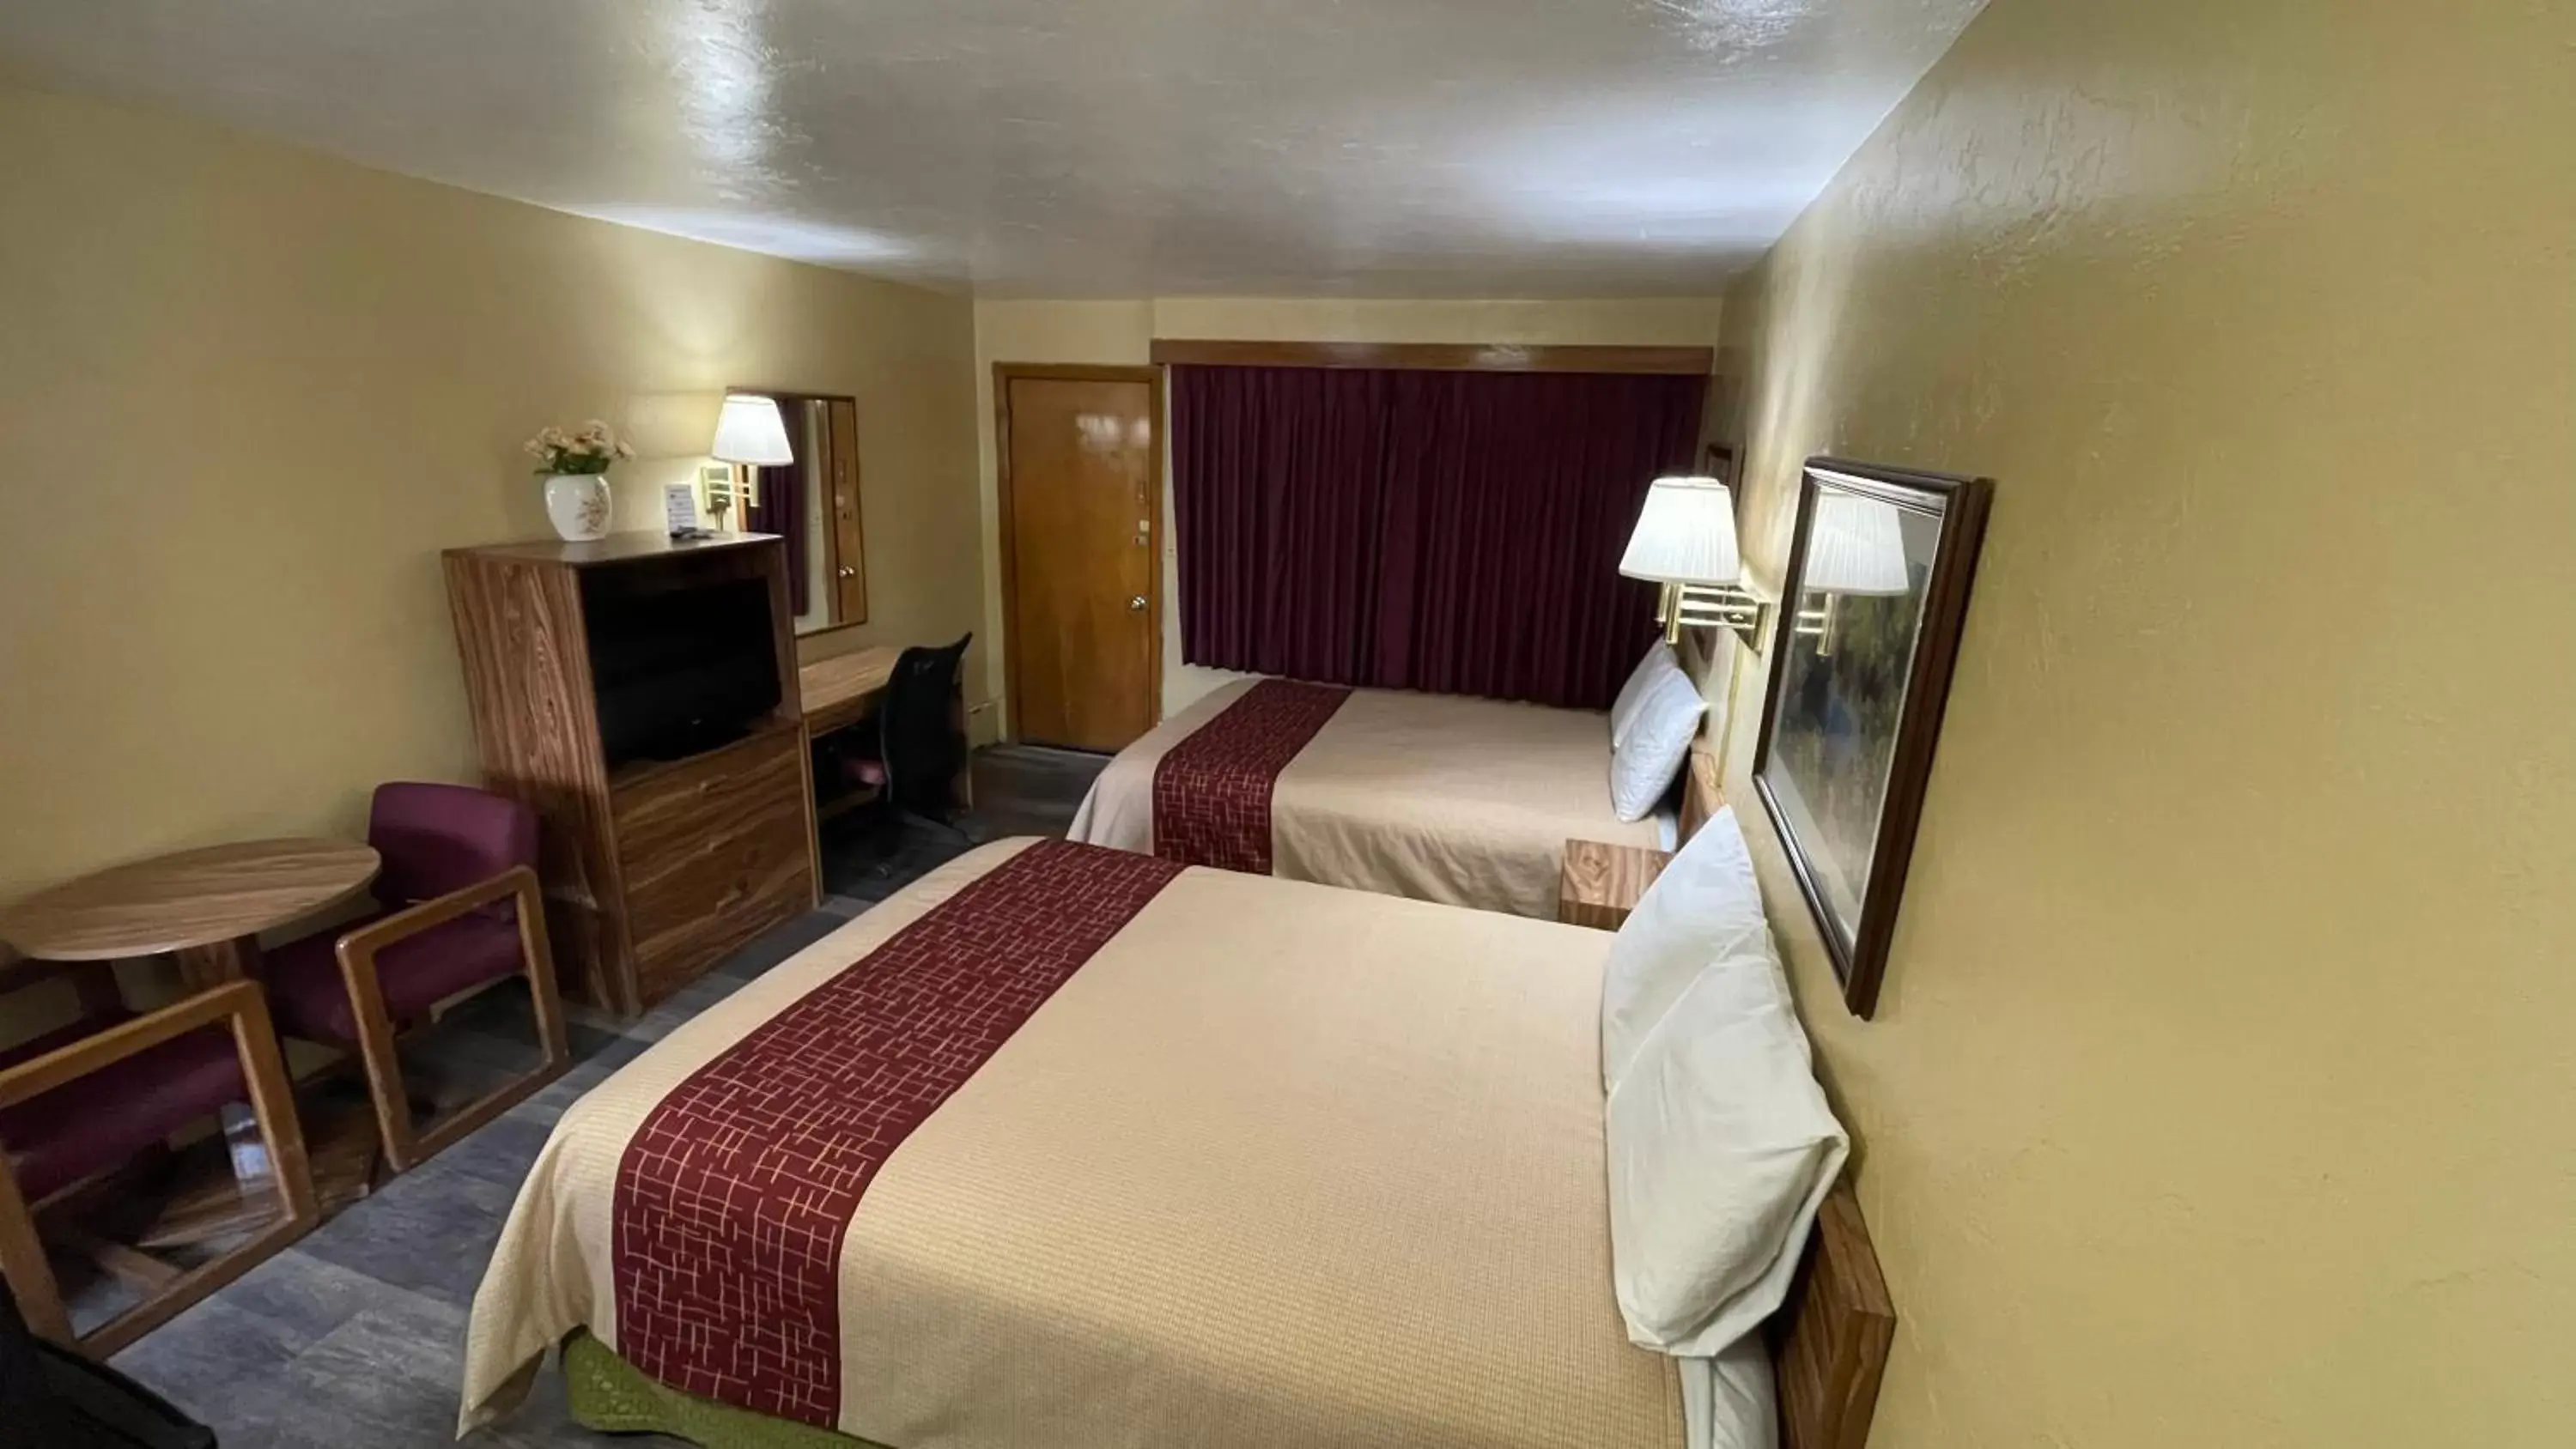 Bed in American inn